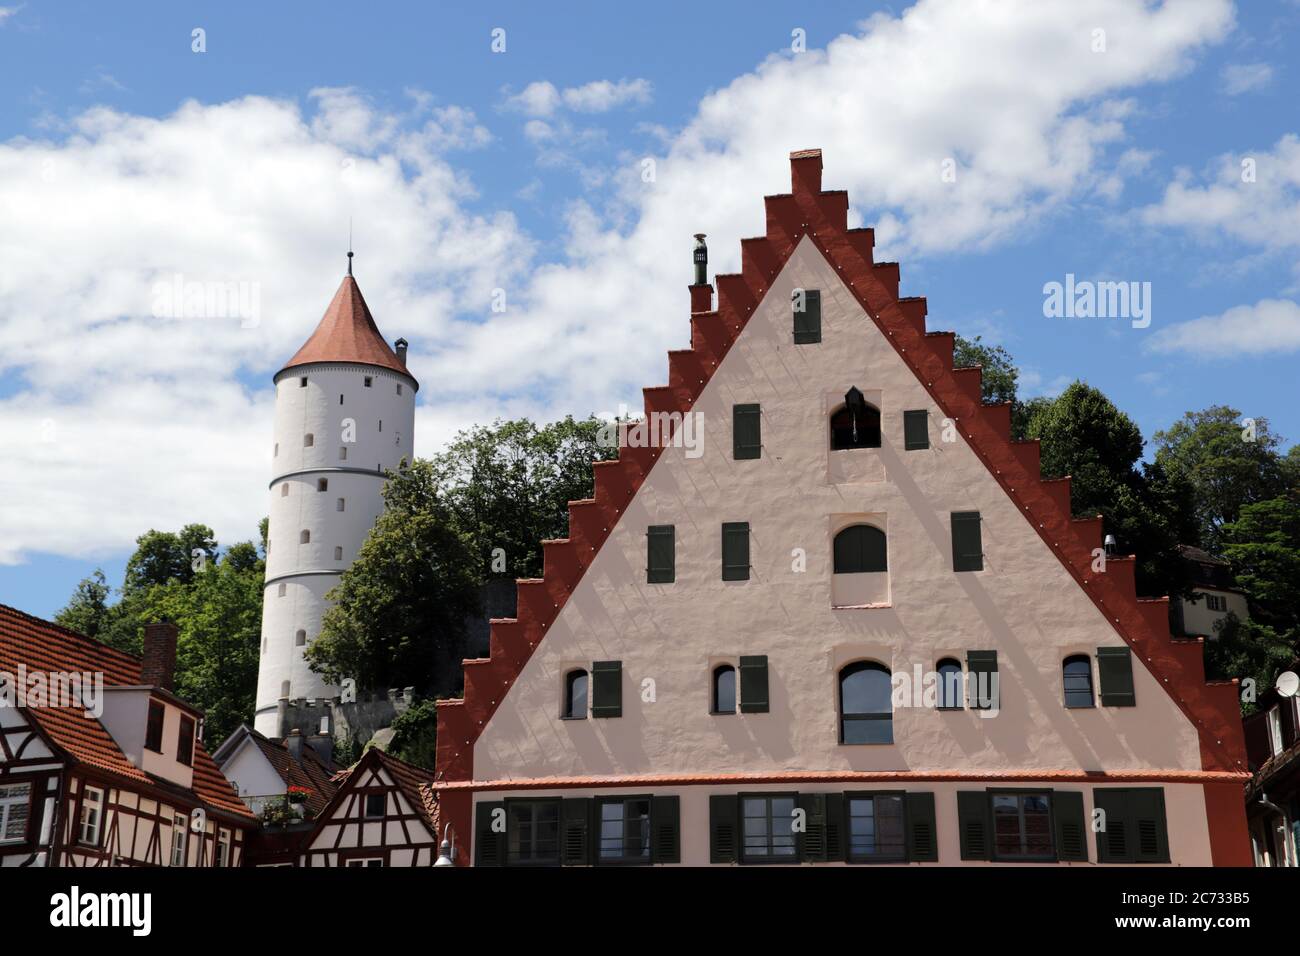 Weisser Turm, historischer Wehrturm und Wachturm, Biberach, Baden-Württemberg, Deutschland Stock Photo